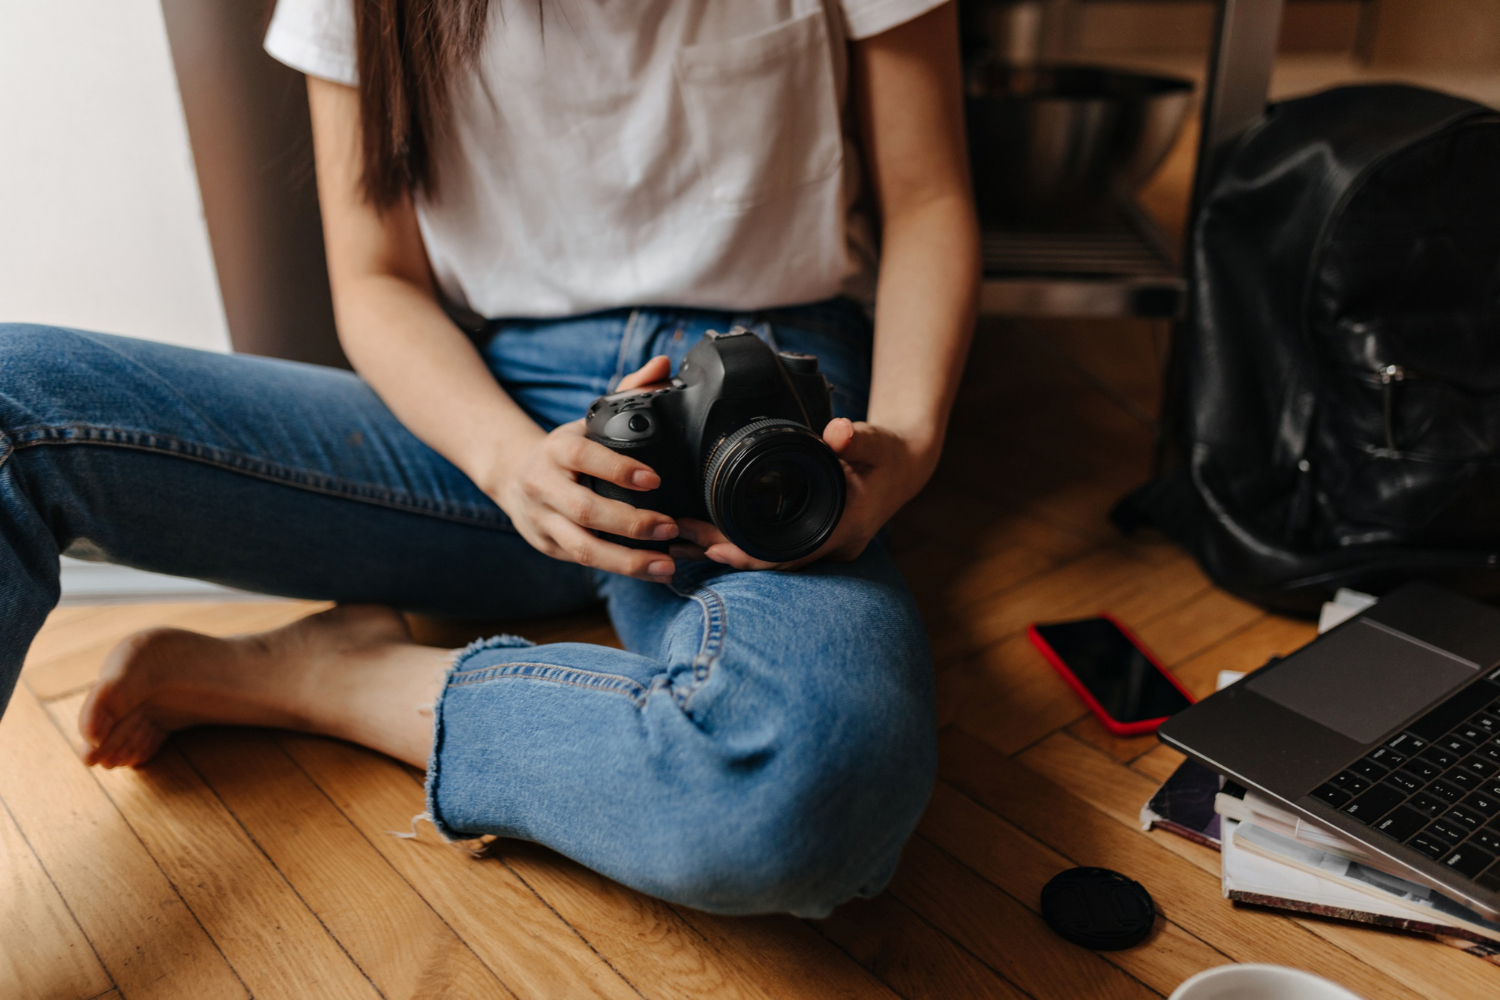 La importancia de la edición y el postprocesado en fotografía y cómo utilizar herramientas como Lightroom y Photoshop para mejorar tus fotos.